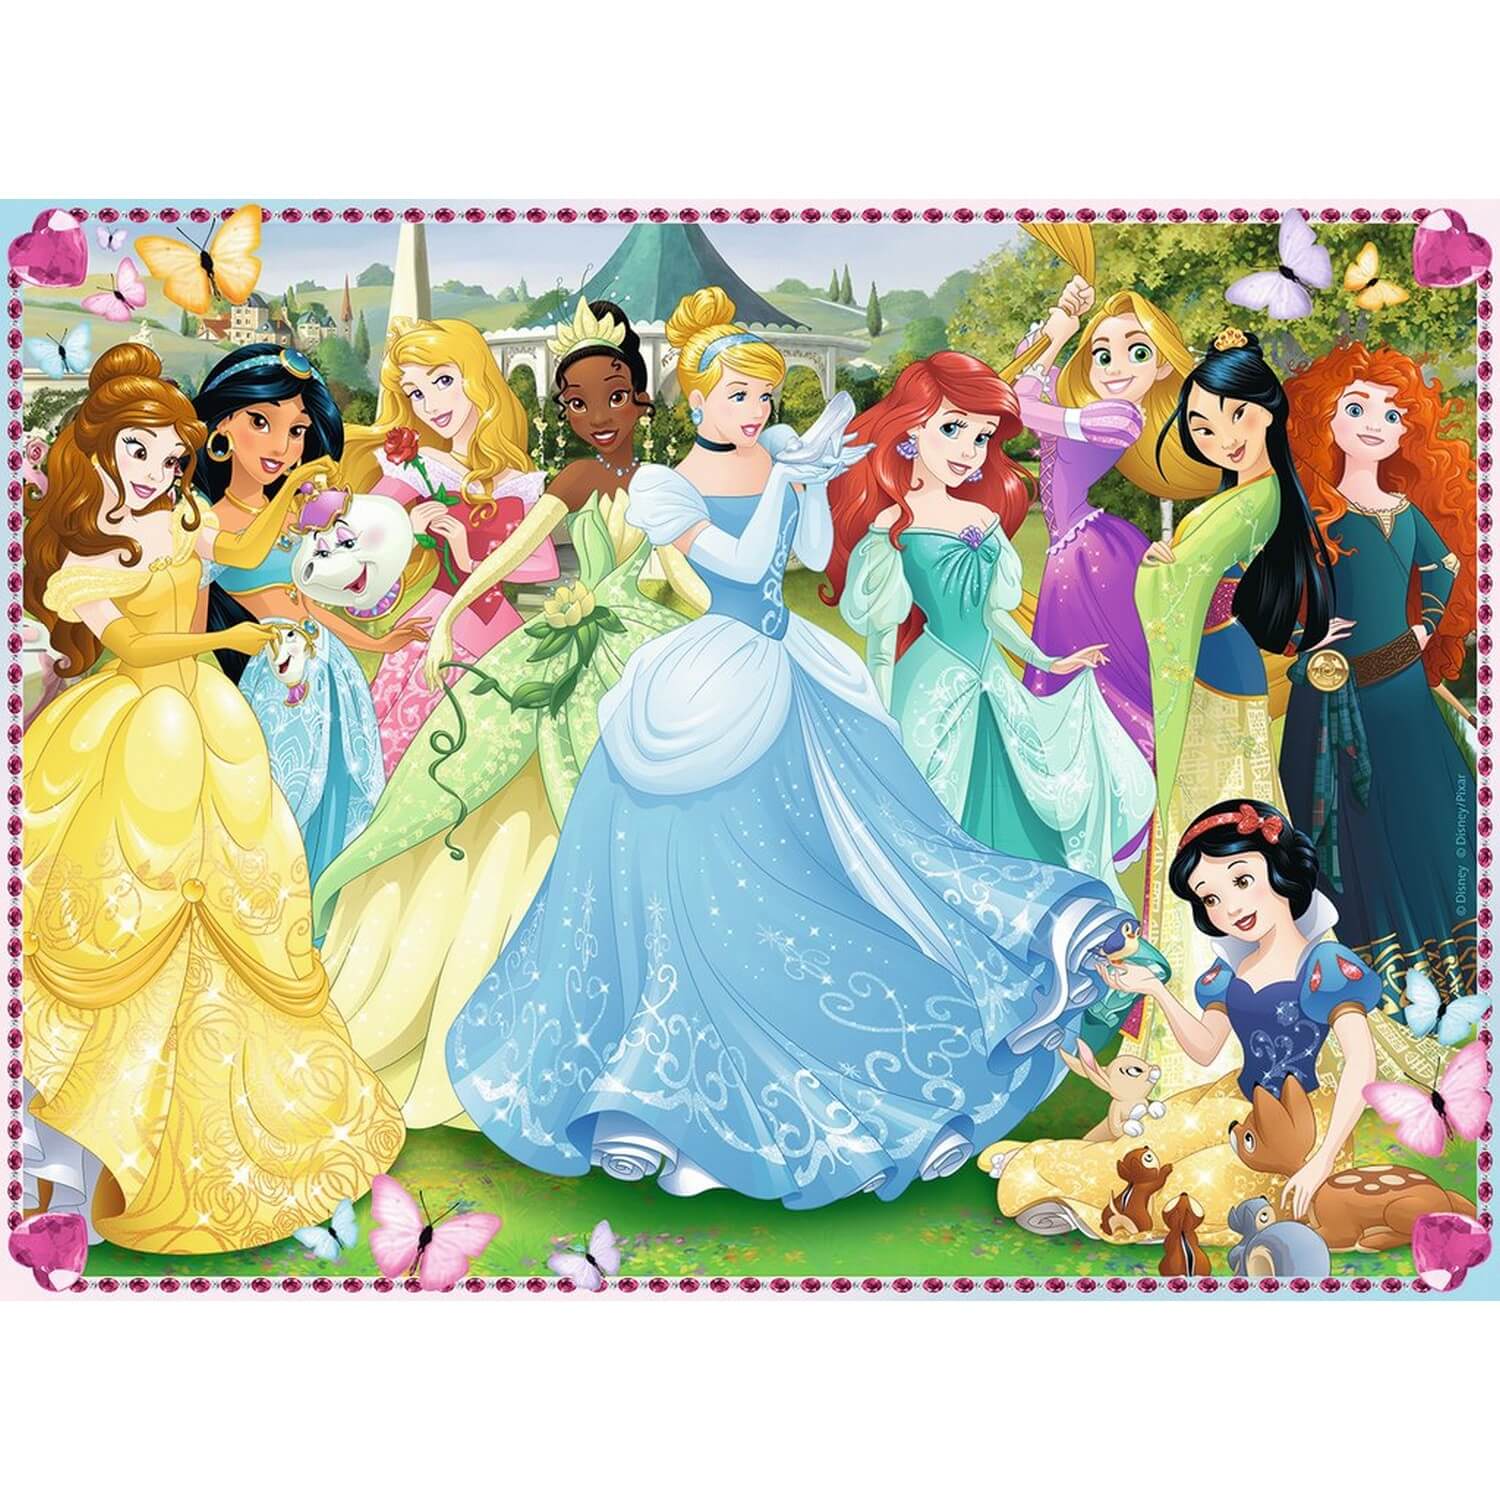 100 принцесс. Пазл Равенсбург принцессы. Пазлы Ravensburger Disney. Пазл Disney 100 XXL. Пазлы принцессы Диснея.